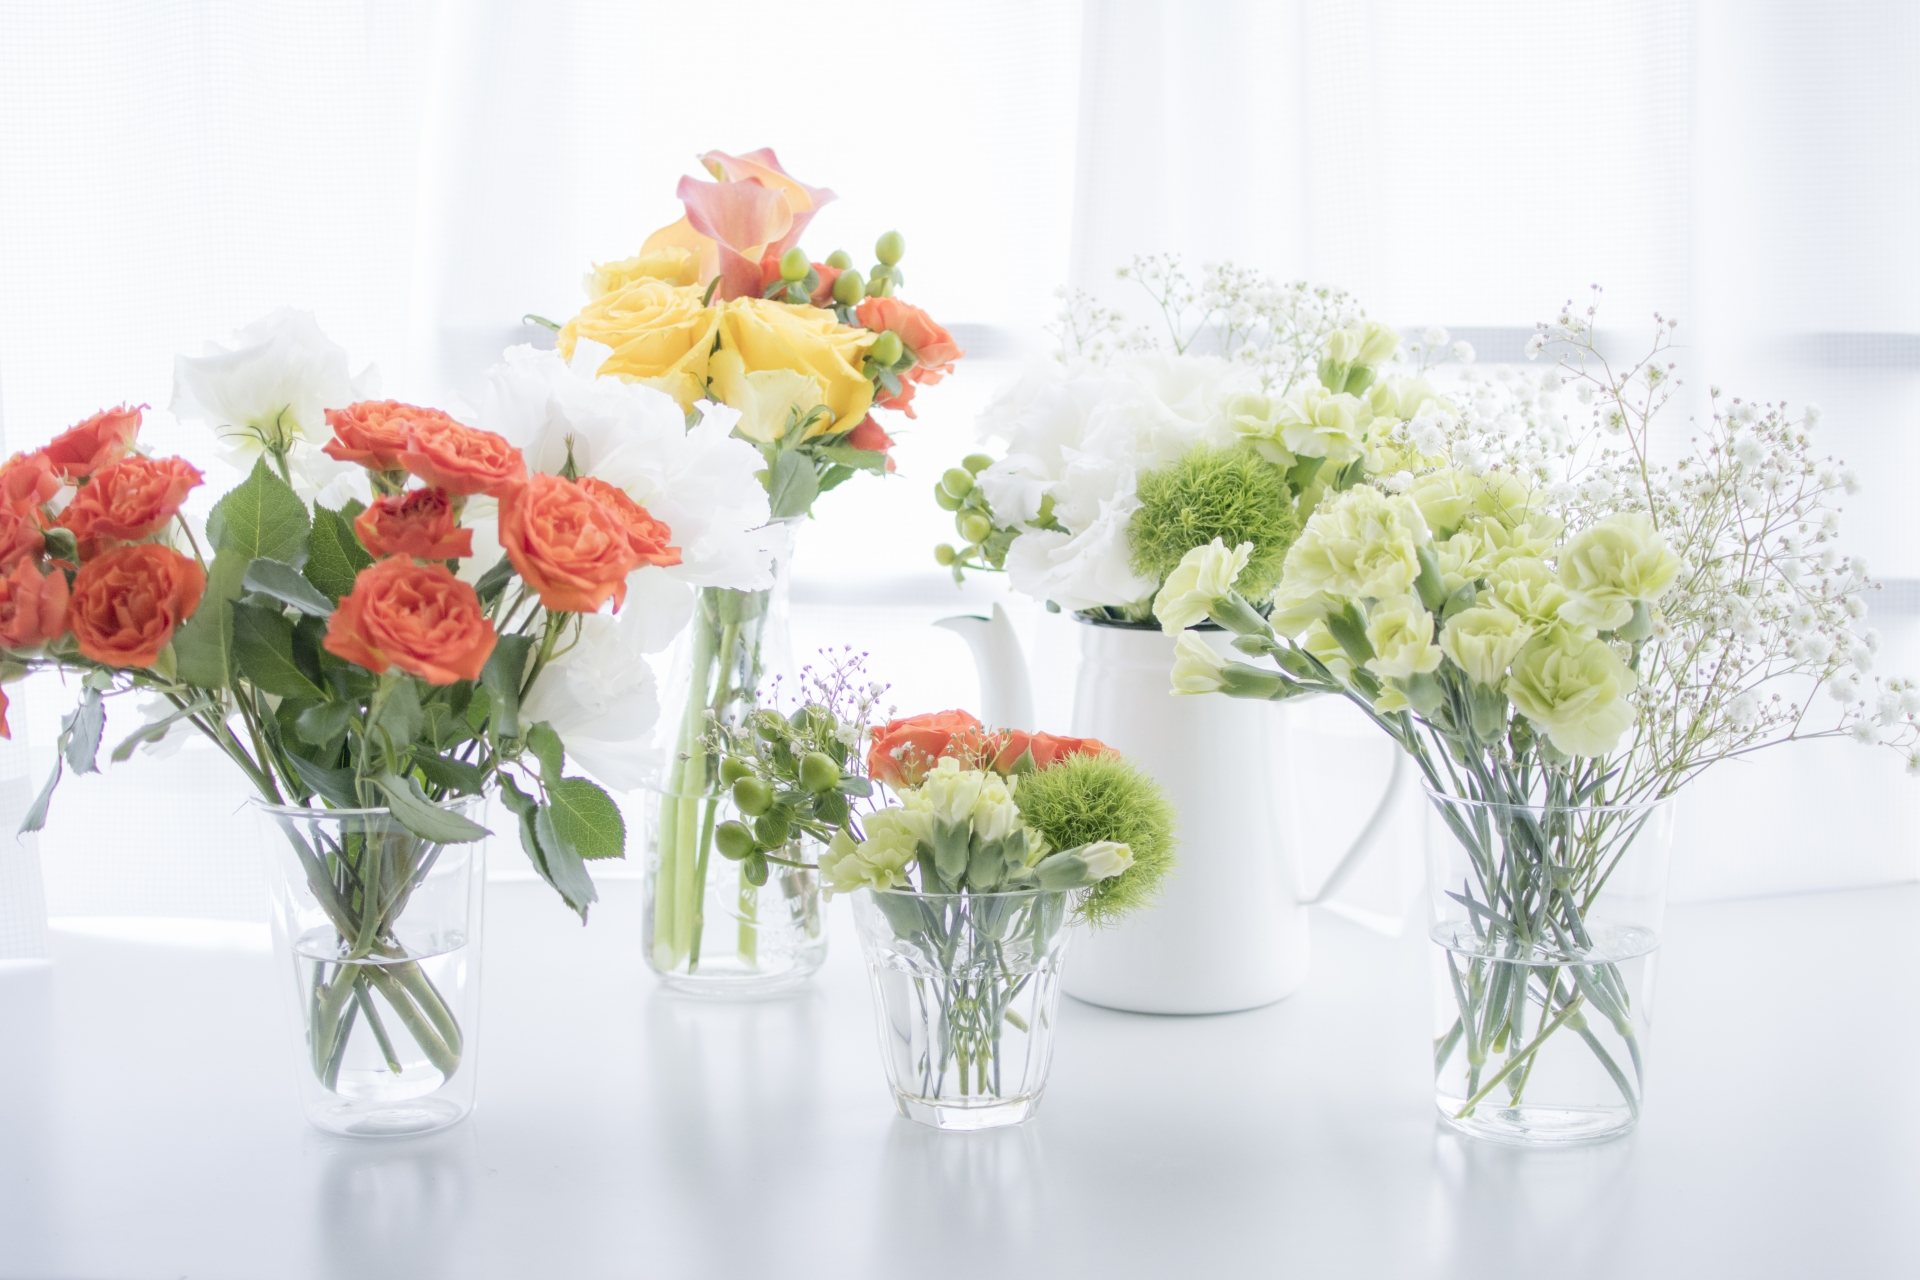 花瓶の代わりに使えるものアイデア ペットボトル 紙袋 マグカップに花を生ける方法